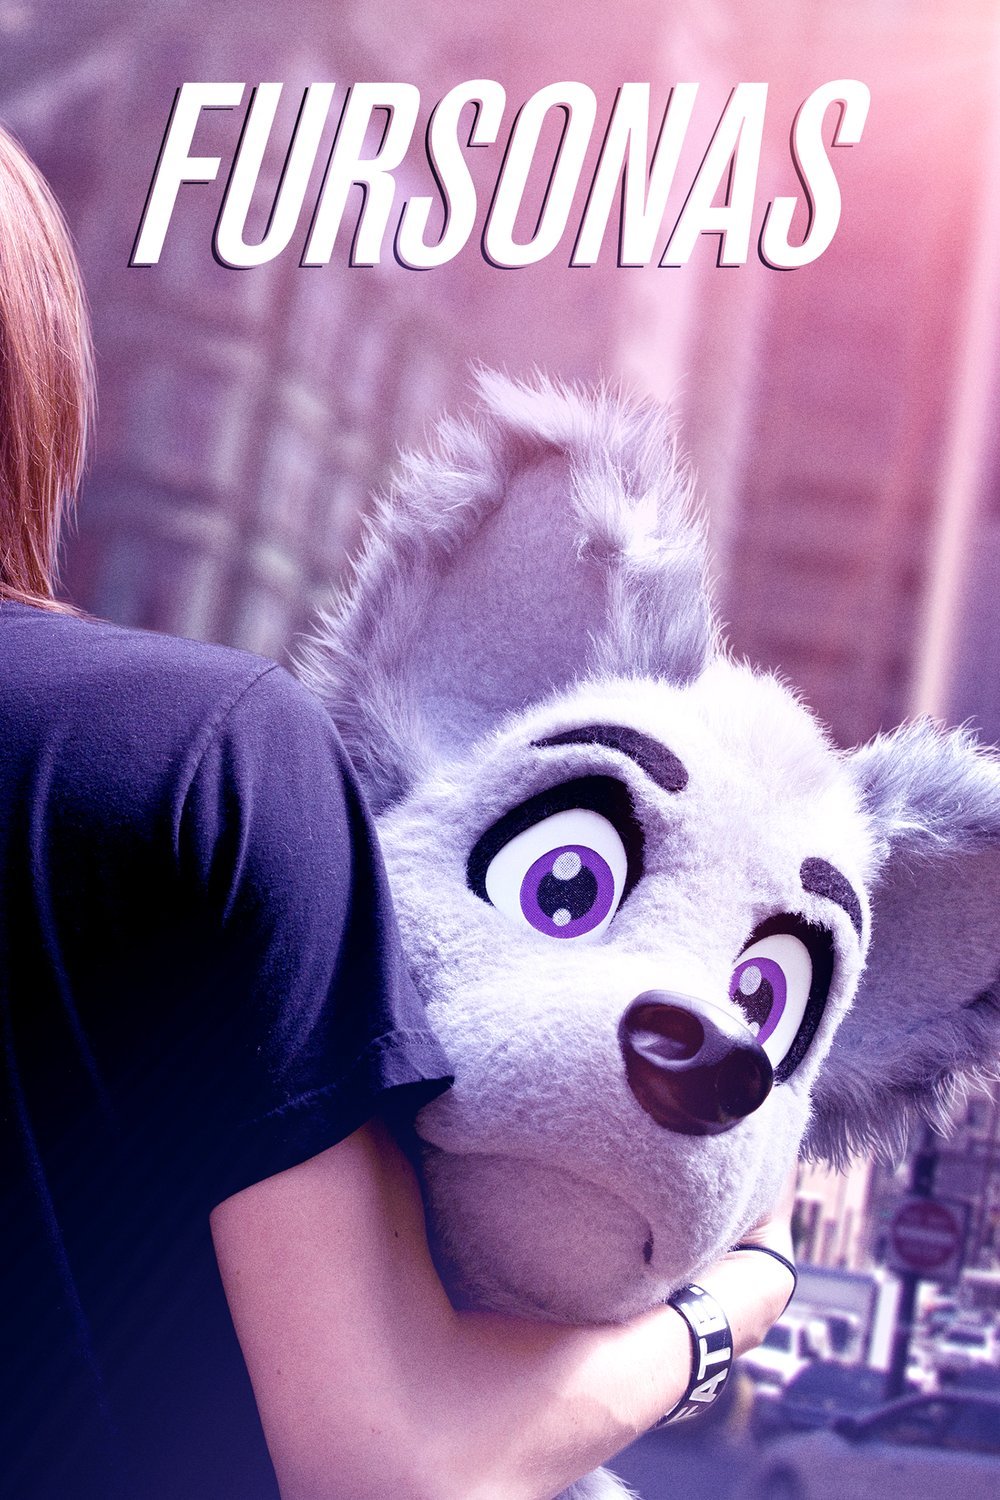 Poster of the movie Fursonas